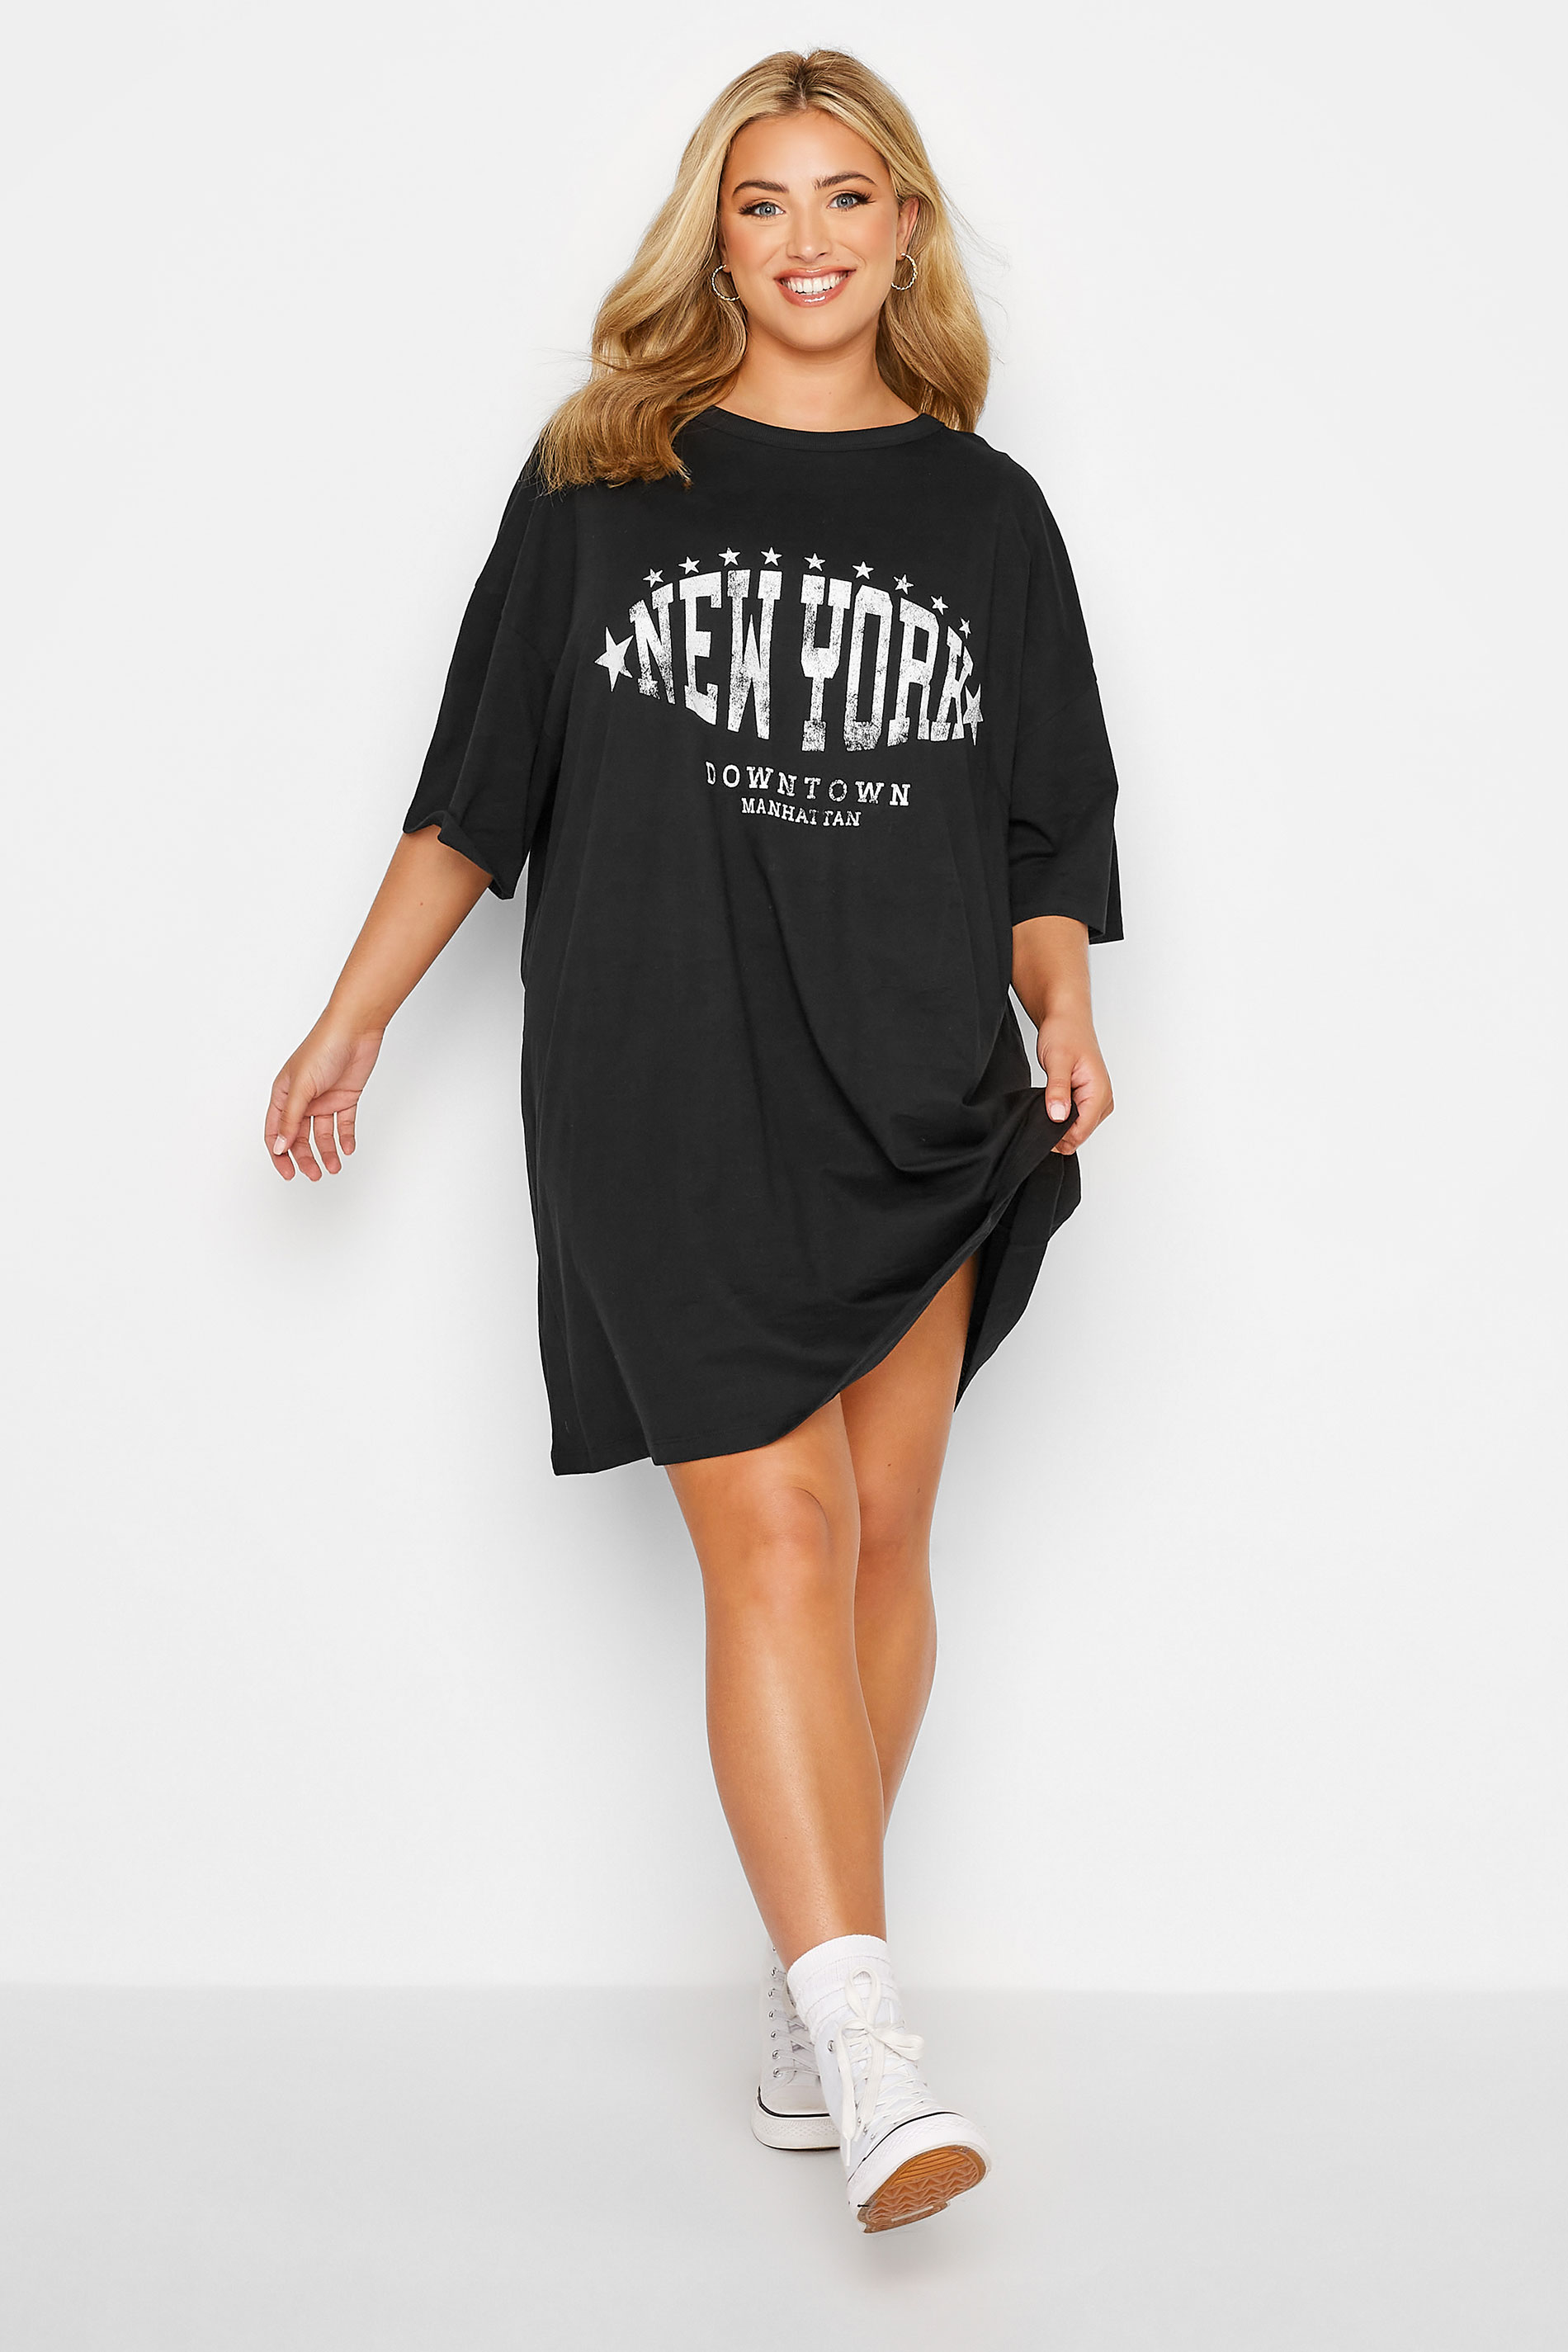 Plus Size Black 'New York' Oversized Tunic T-Shirt Dress | Yours Clothing 2